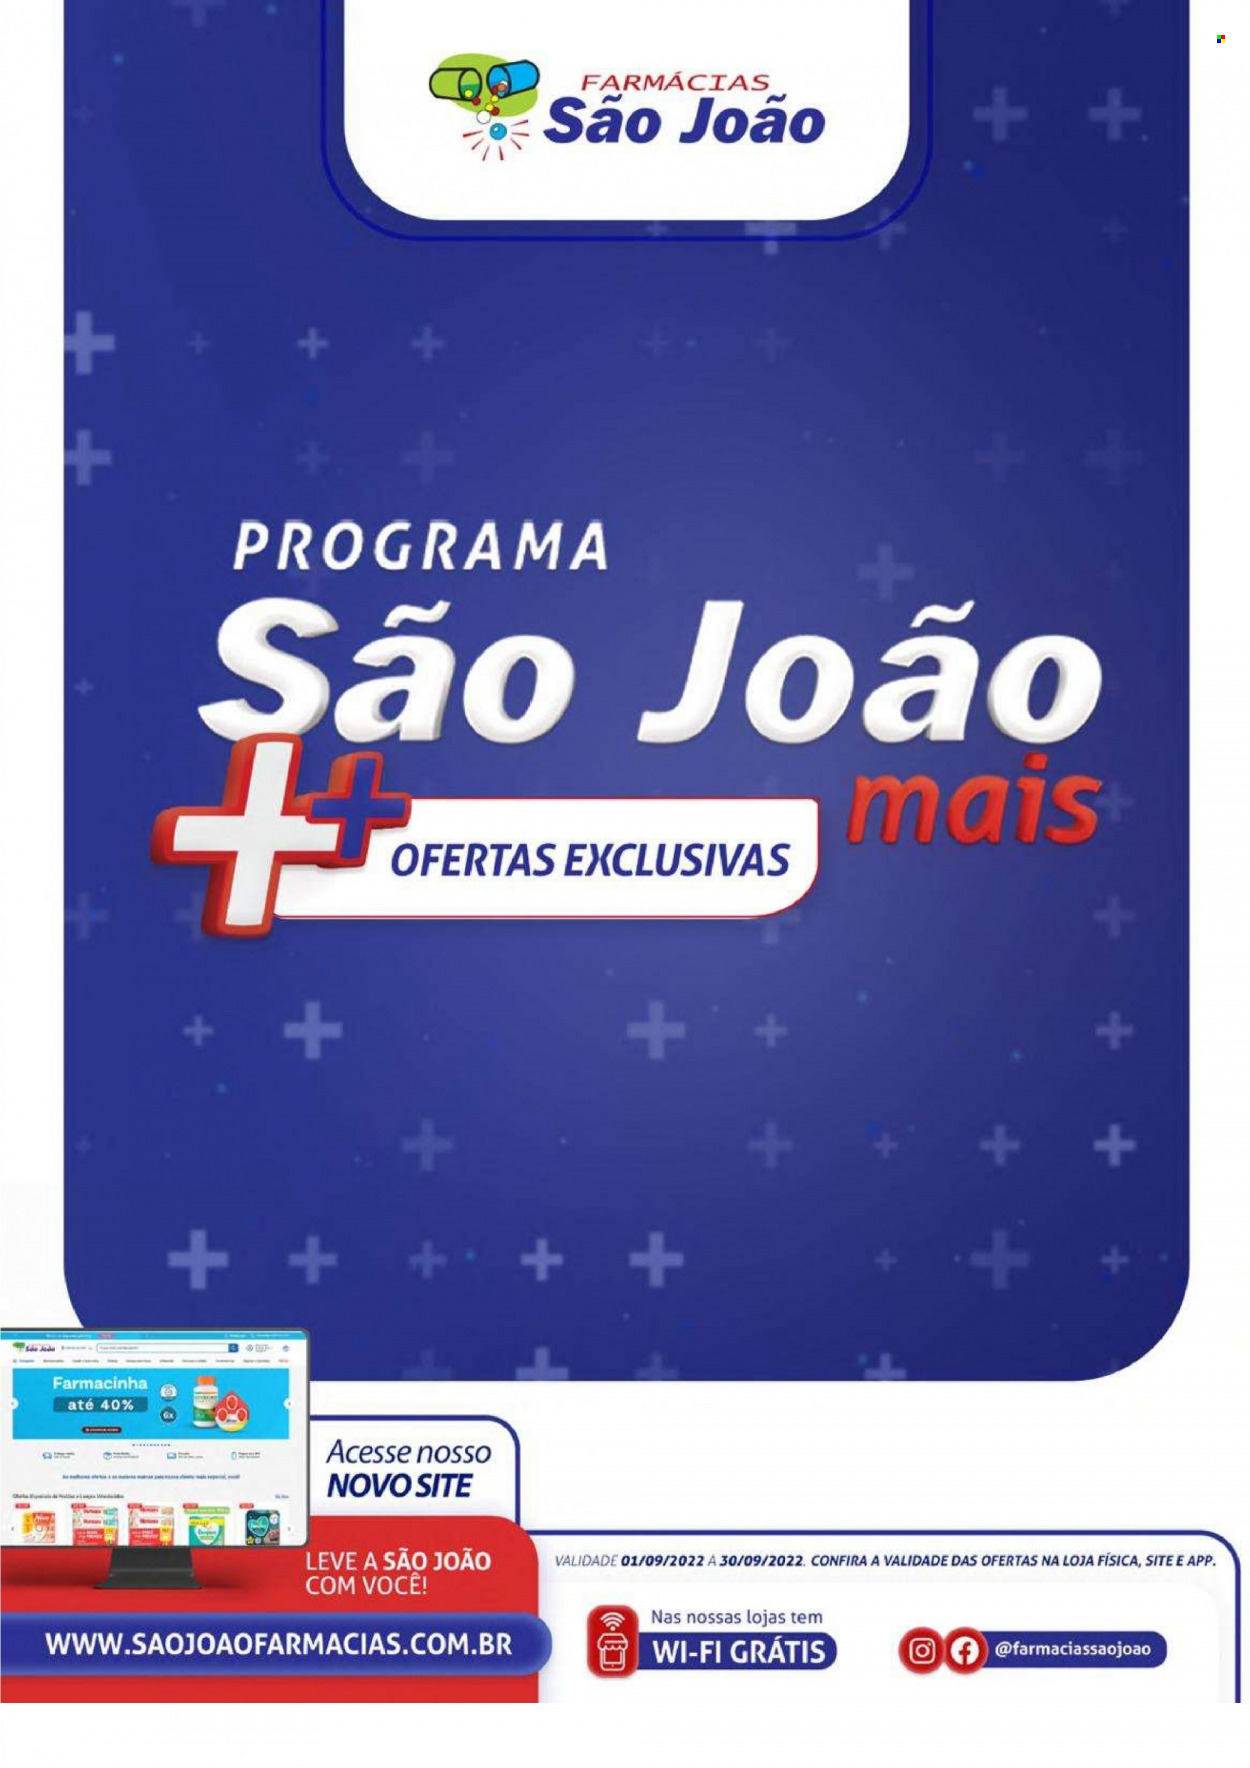 Encarte Farmácias São João  - 01.09.2022 - 30.09.2022.